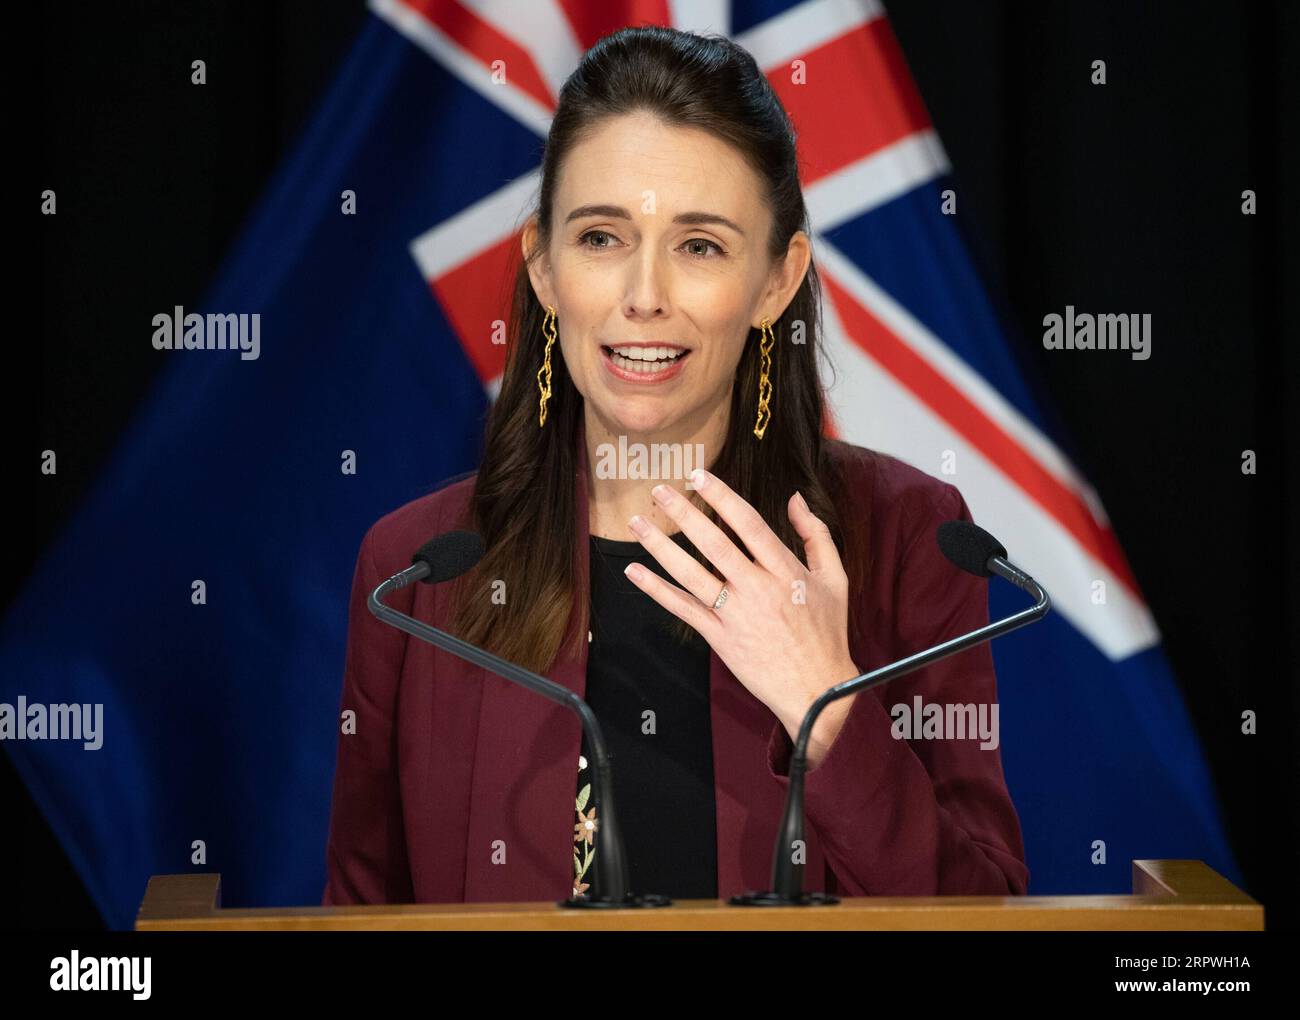 200427 -- WELLINGTON, 27 de abril de 2020 Xinhua -- La primera ministra de Nueva Zelanda, Jacinda Ardern, habla en una conferencia de prensa el 27 de abril de 2020, el último día del nivel de alerta 4, en Wellington, Nueva Zelanda. Nueva Zelanda pasará del nivel de alerta 4 de COVID-19 al nivel de alerta 3 a las 11:59 p.m. hora local del lunes, relajándose en algunos negocios. El país permanecerá en el nivel de alerta 3 durante dos semanas antes de una nueva revisión y decisión de nivel de alerta el 11 de mayo. Mark Mitchell/NZME/Pool vía Xinhua Wellington *** 200427 WELLINGTON, 27 de abril de 2020 La primera ministra de Xinhua Nueva Zelanda, Jacinda Ardern, habla en un comunicado de prensa Foto de stock